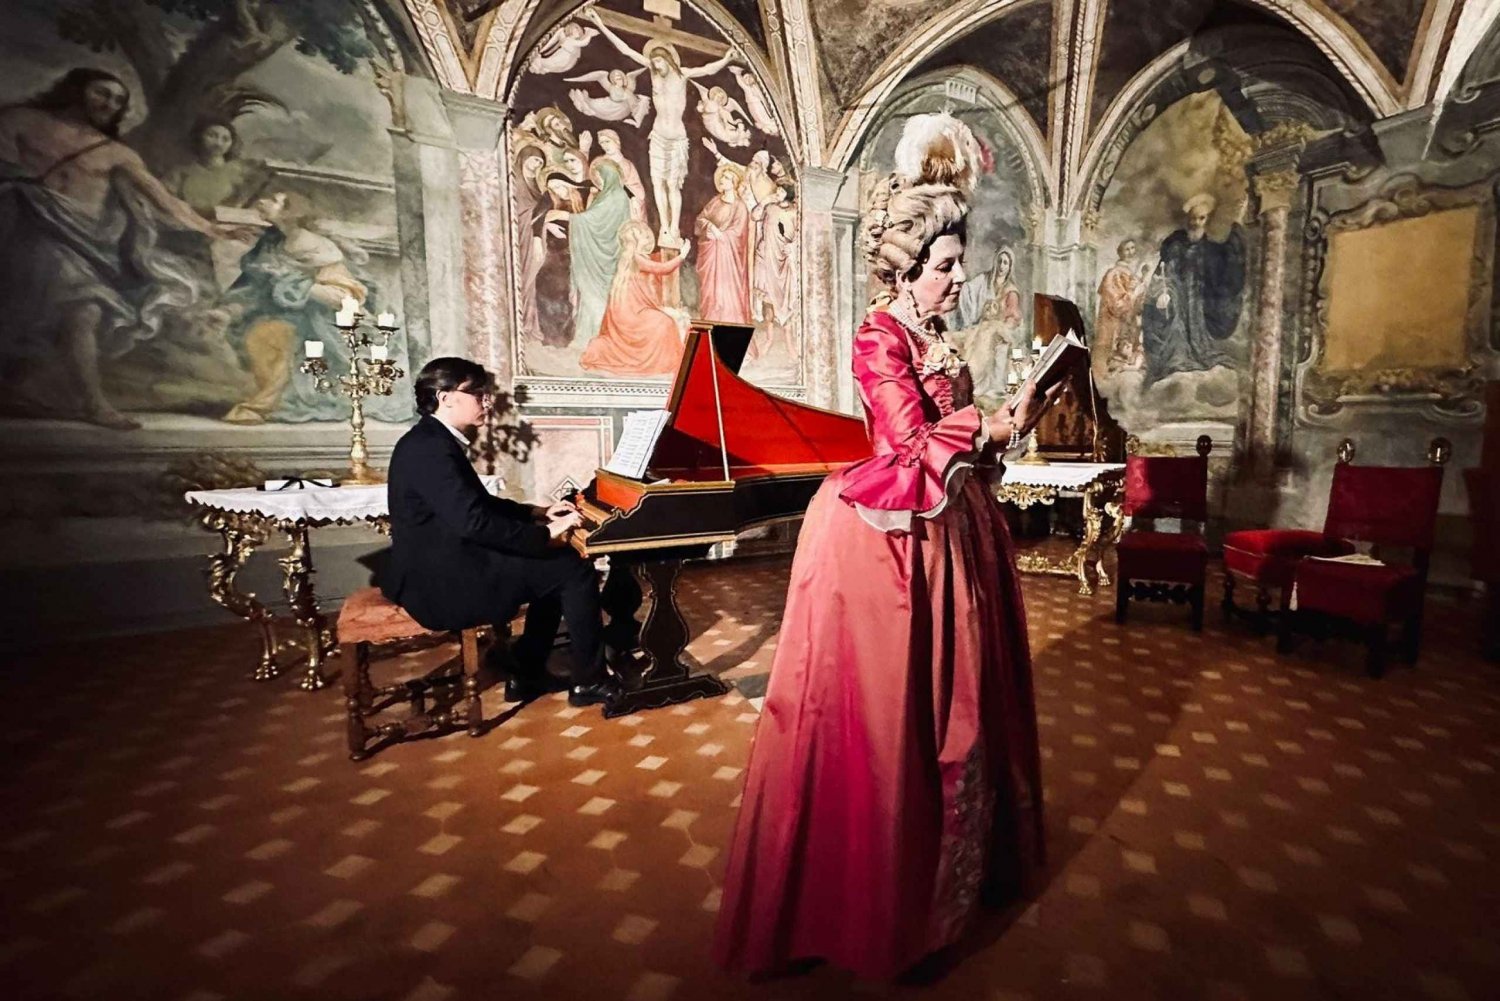 Firenze, Italien: Konzert Opera Firenze